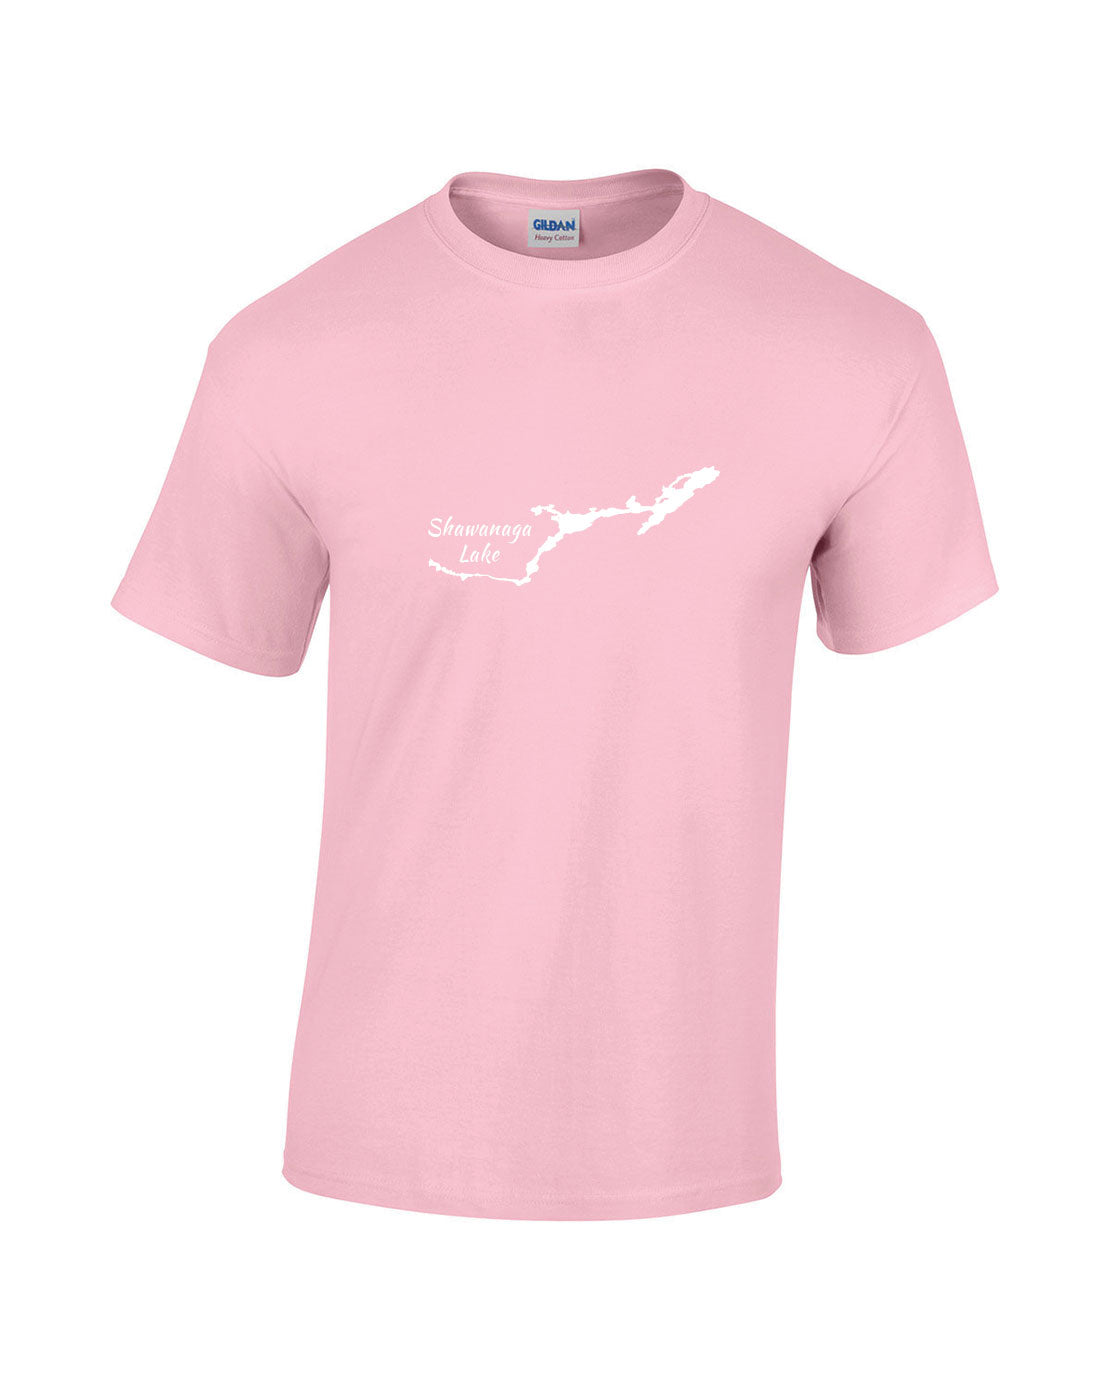 Shawanaga Lake T-Shirt